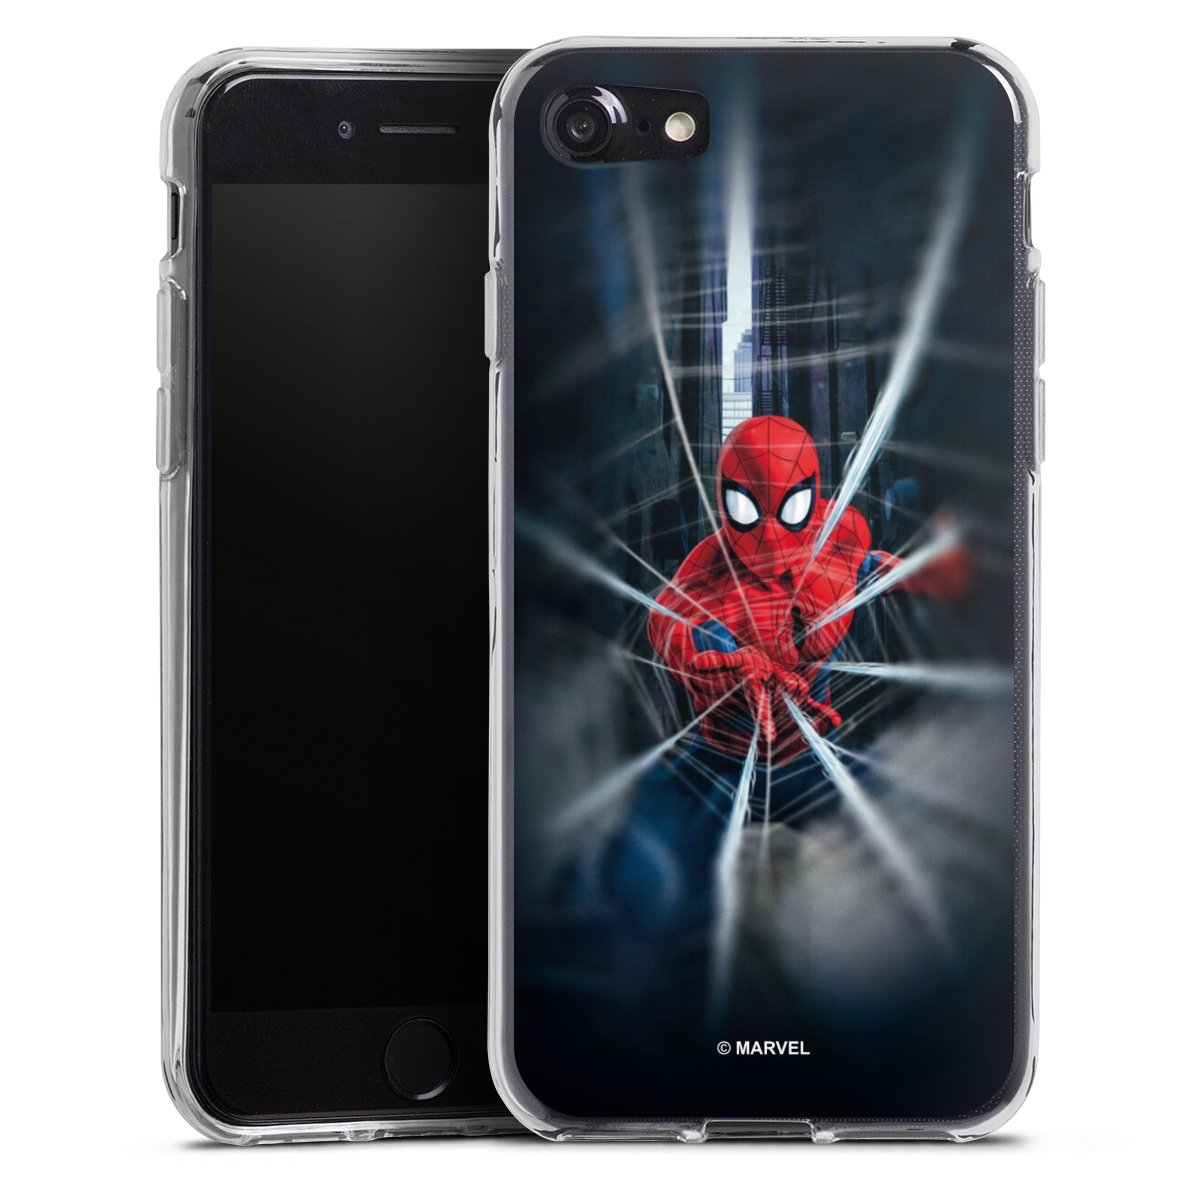 Interactie grote Oceaan wijs Spider-Man Webs In Action voor Siliconen hoesje (transparant) voor Apple  iPhone 7 van DeinDesign